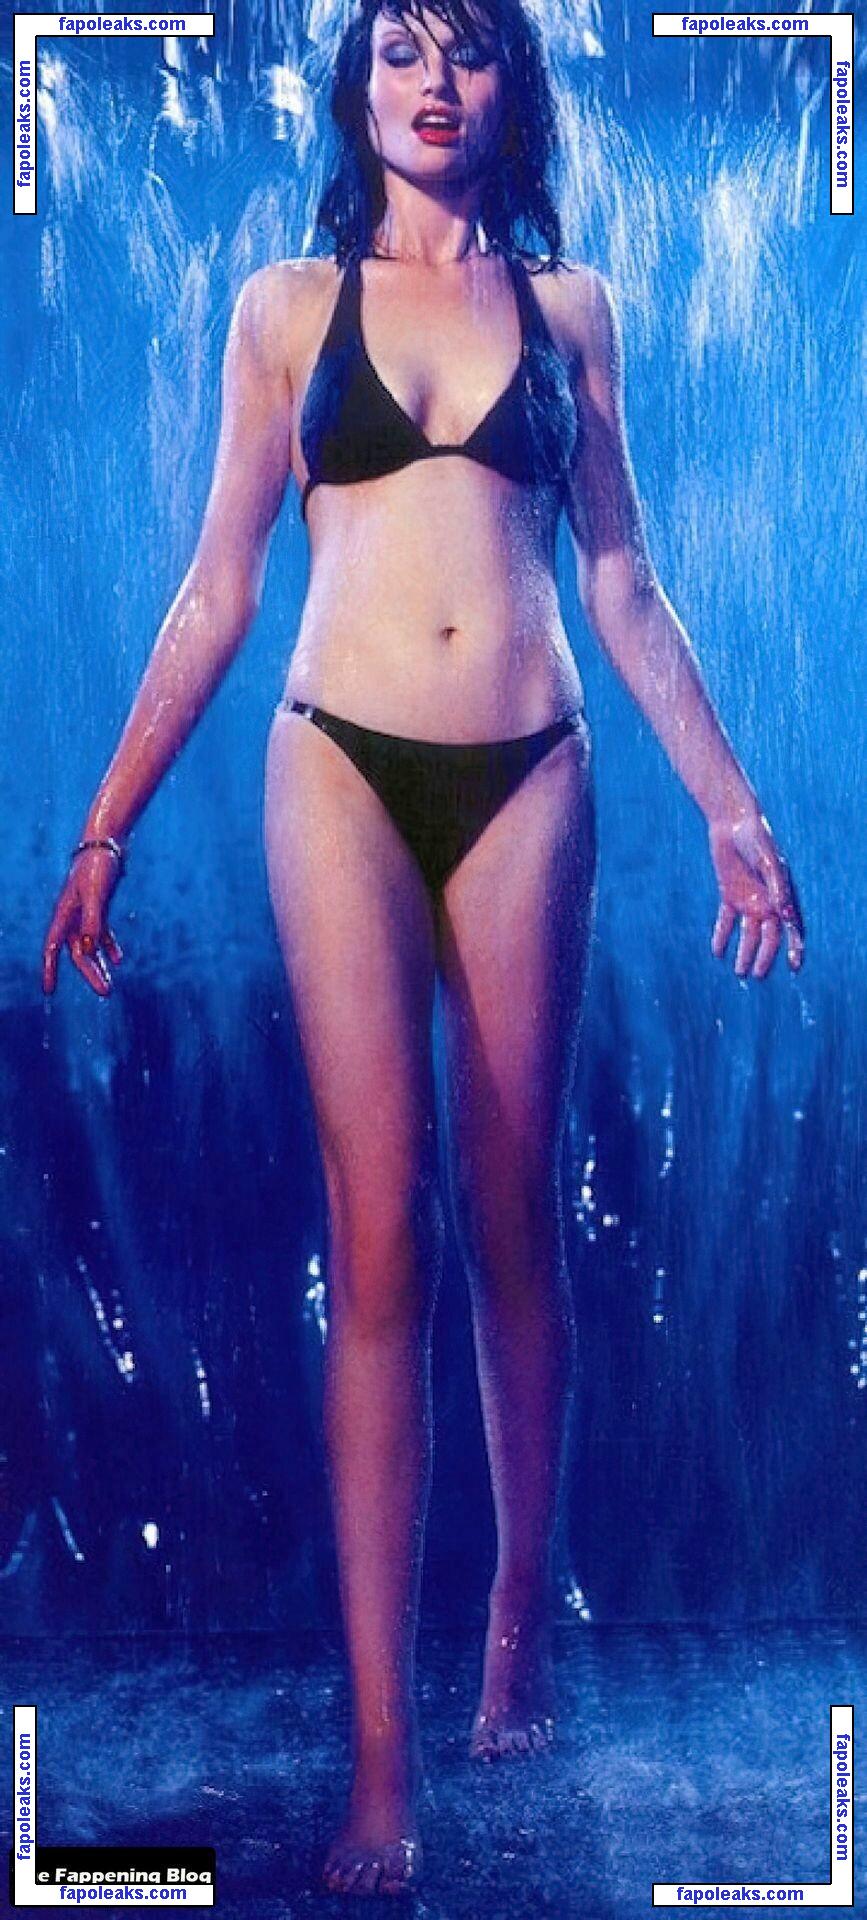 Sophie Ellis Bextor / sophieellisbextor nude photo #0100 from OnlyFans